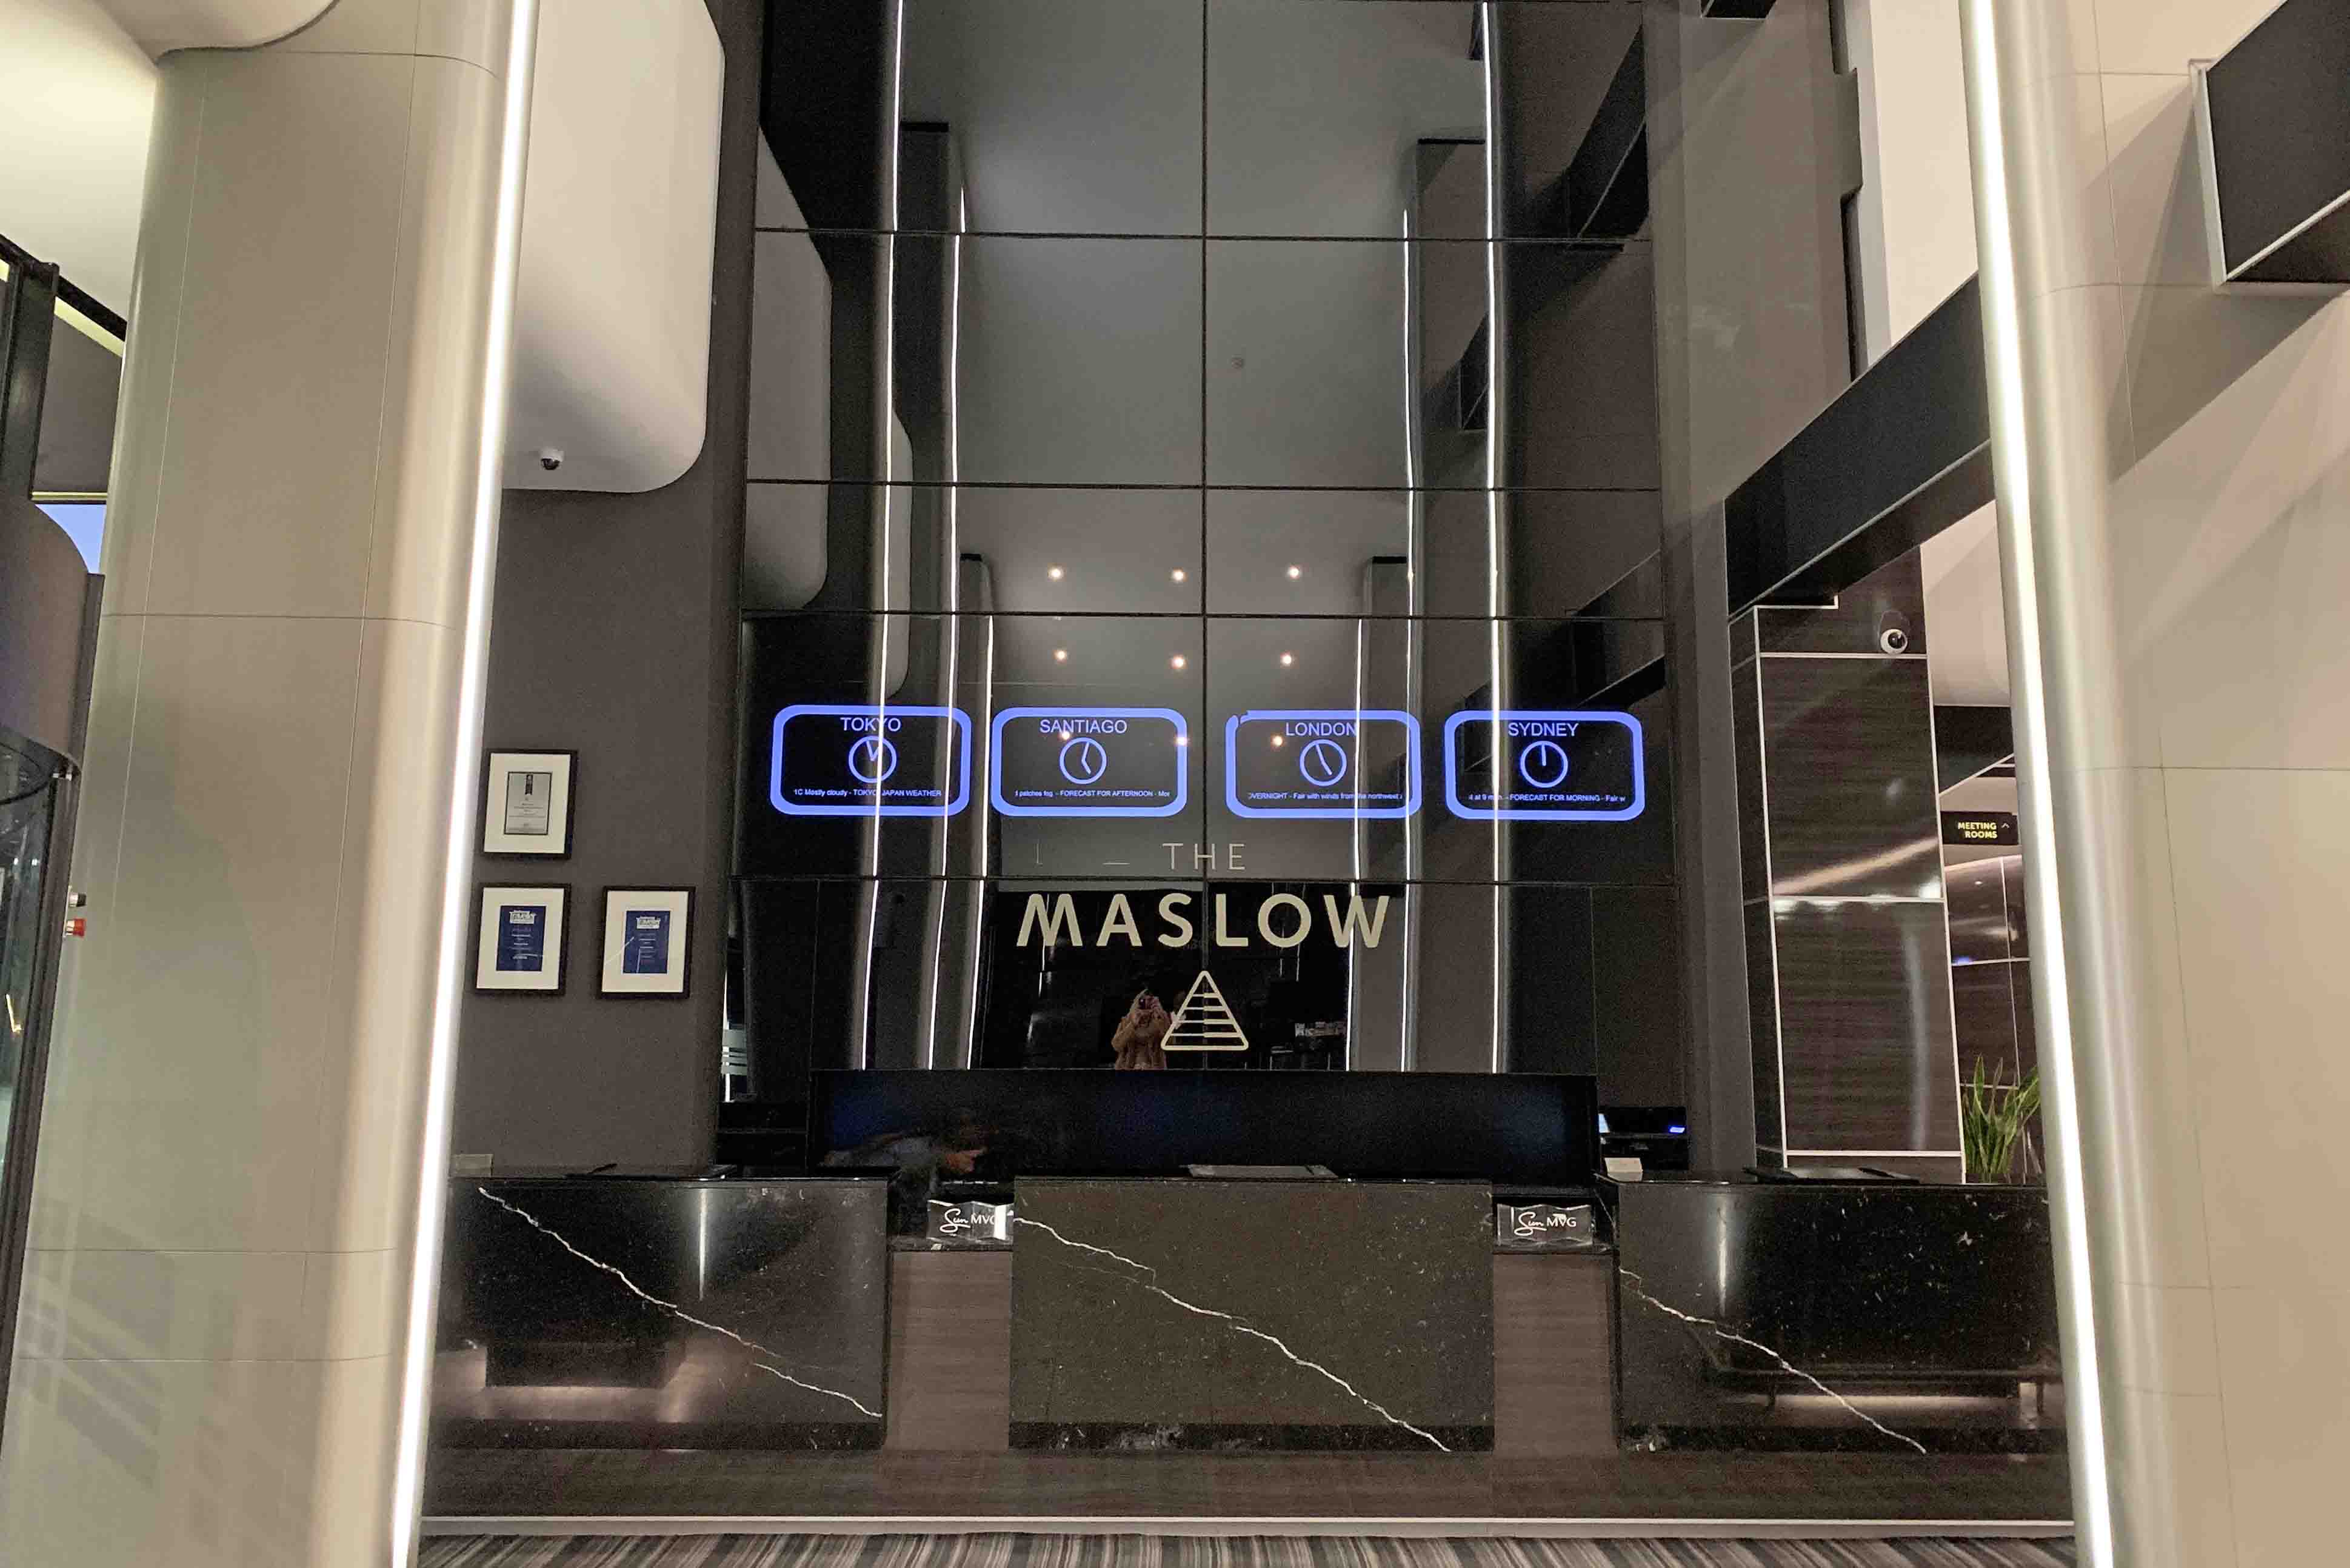 Onde ficar em Joanesburgo - dicas de hotéis - The Maslow Sandton